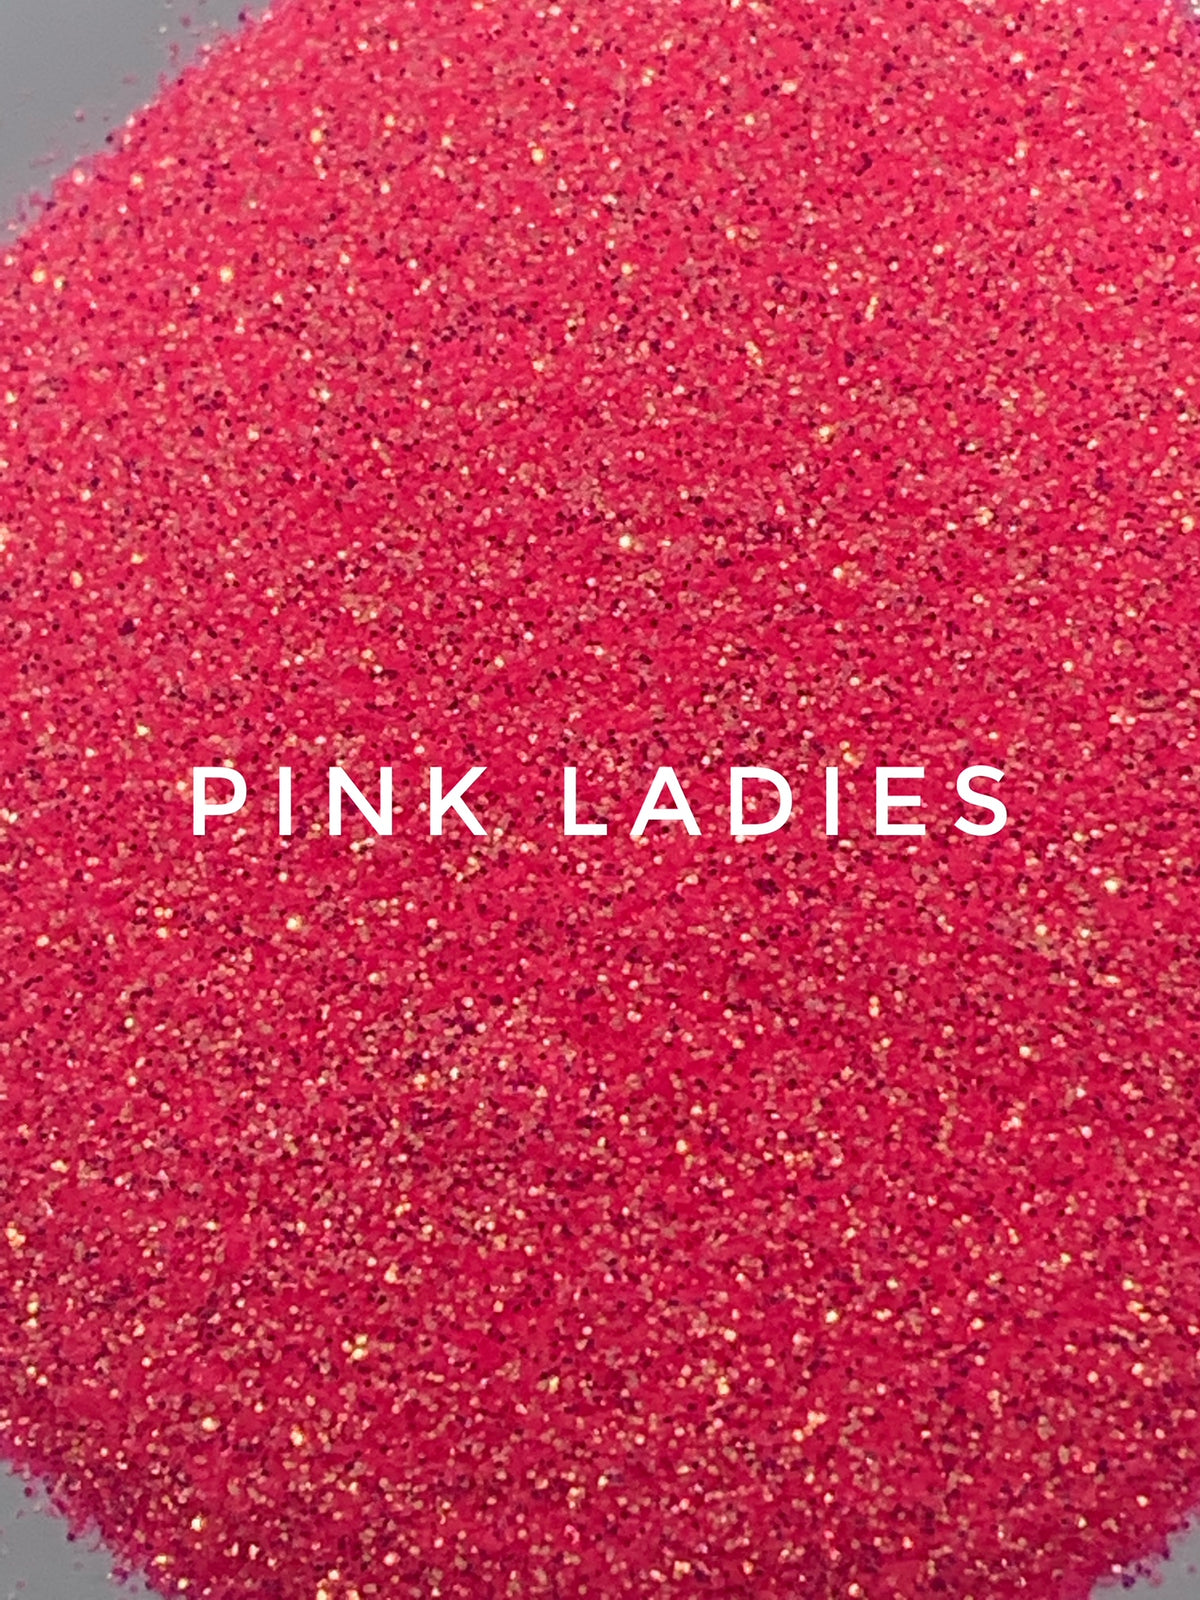 Pink Ladies - 1/128